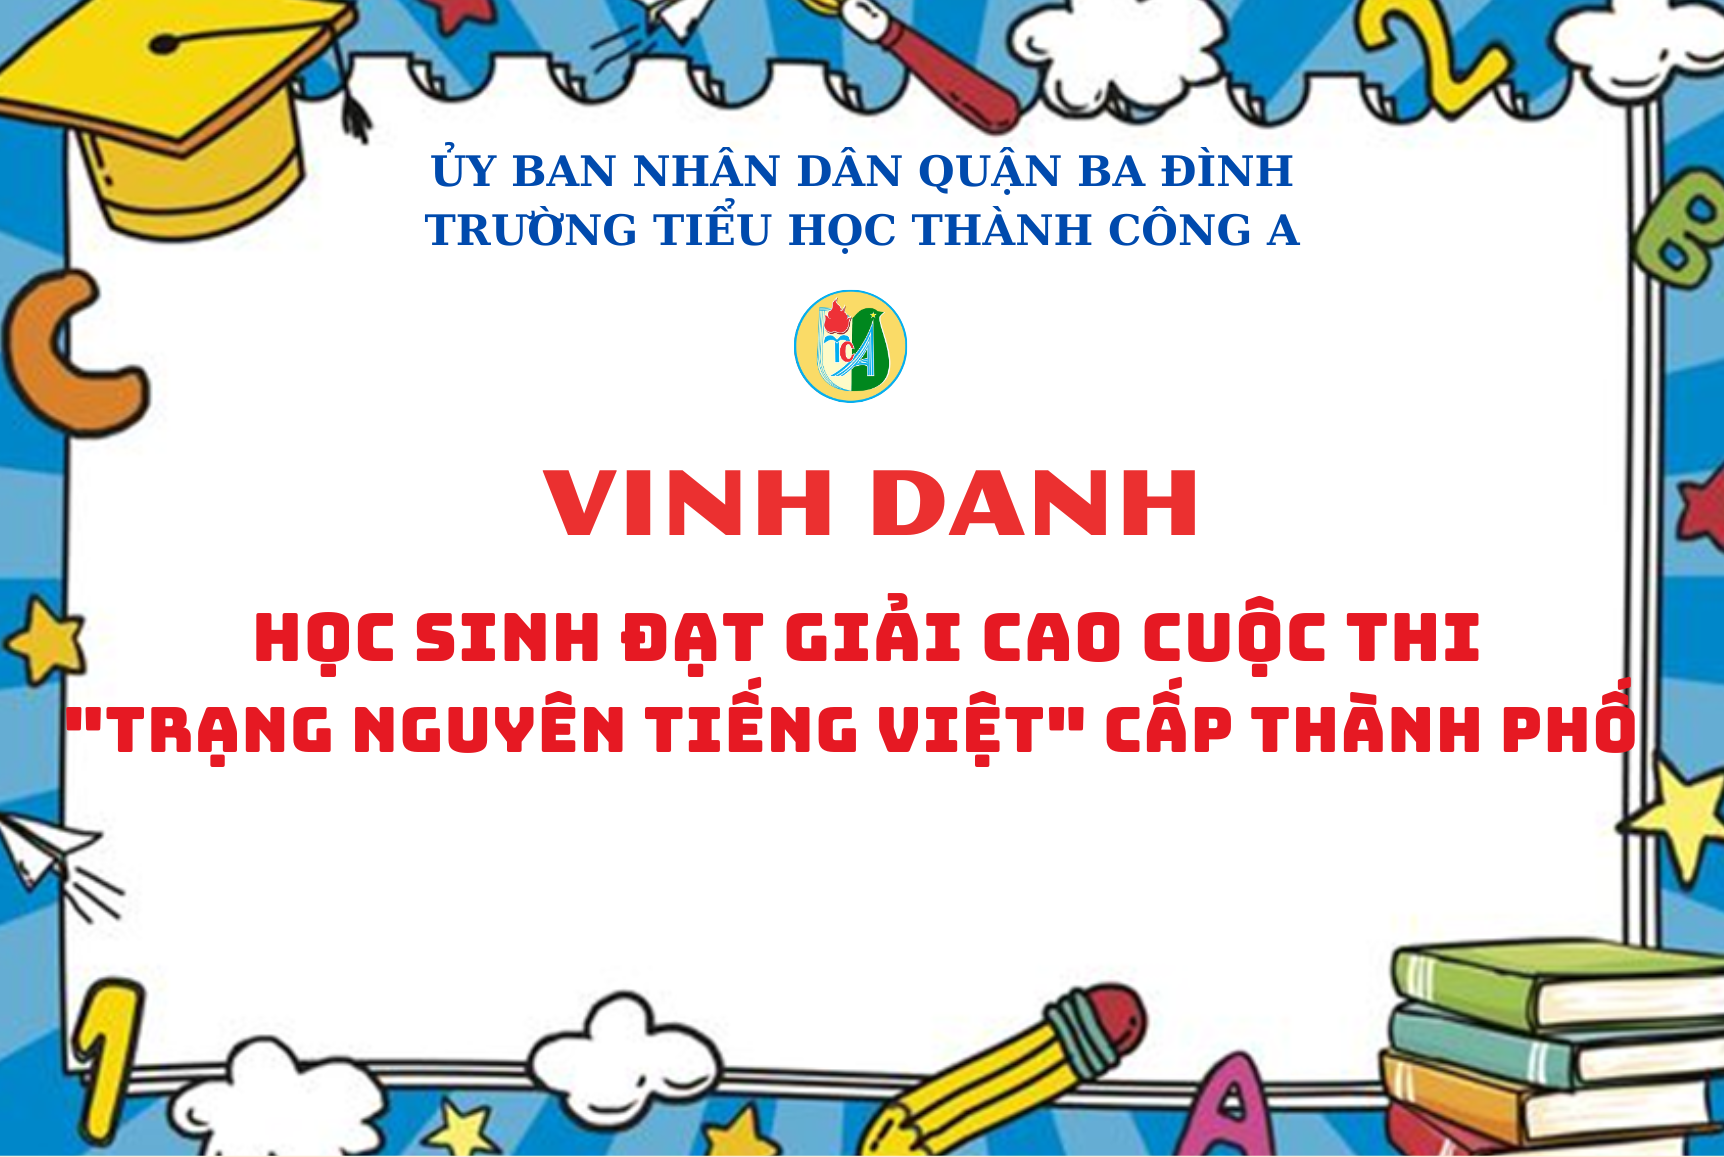 Vinh danh học sinh đạt giải cao trong cuộc thi "Trạng Nguyên Tiếng Việt" cấp Thành phố